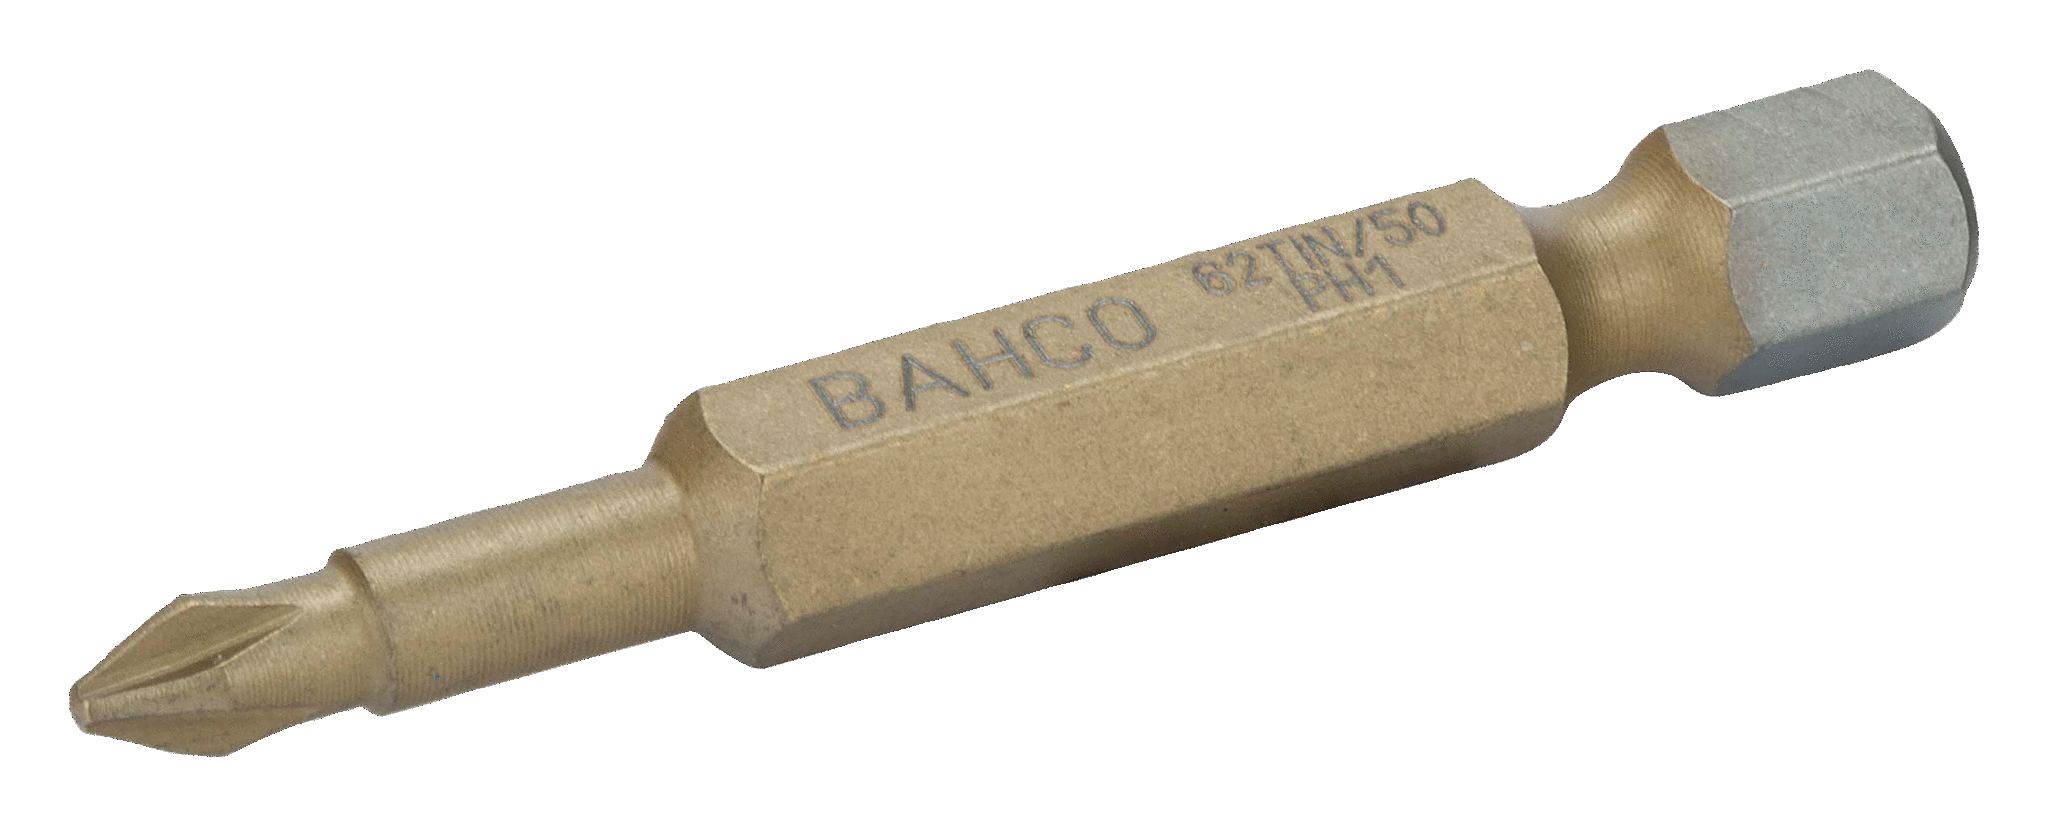 Торсионные биты с покрытием из нитрида титана для отверток Phillips, 50 мм BAHCO 62TIN/50PH3